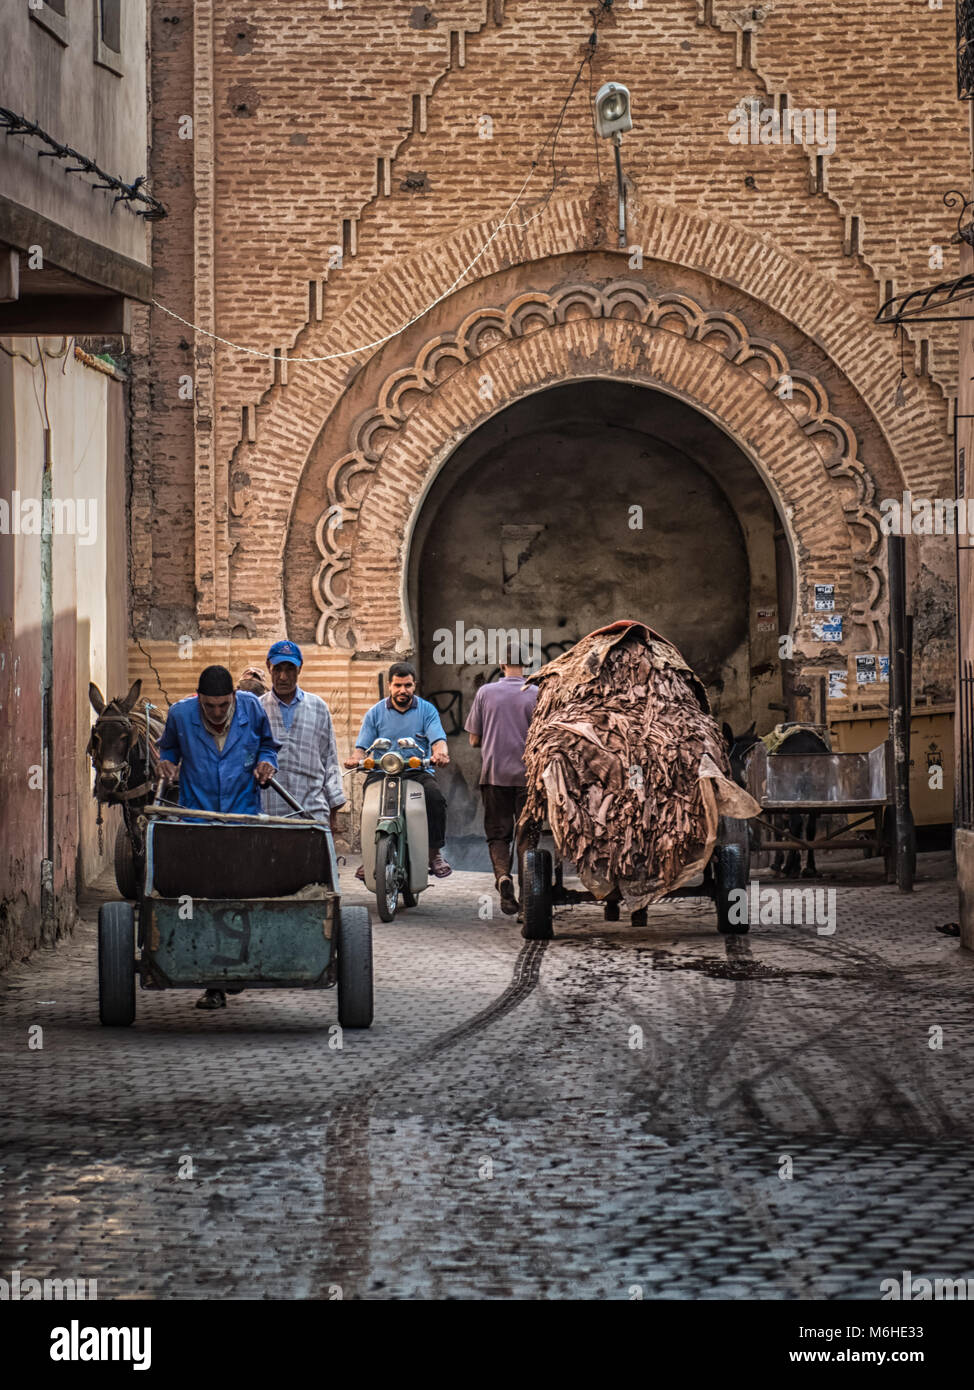 Ein Medina Street in Marrakesch, Marokko in der Gerberei. Eine Karre voller getränkt Lederhäute wird von einem Esel durch einen Torbogen gezogen. Stockfoto